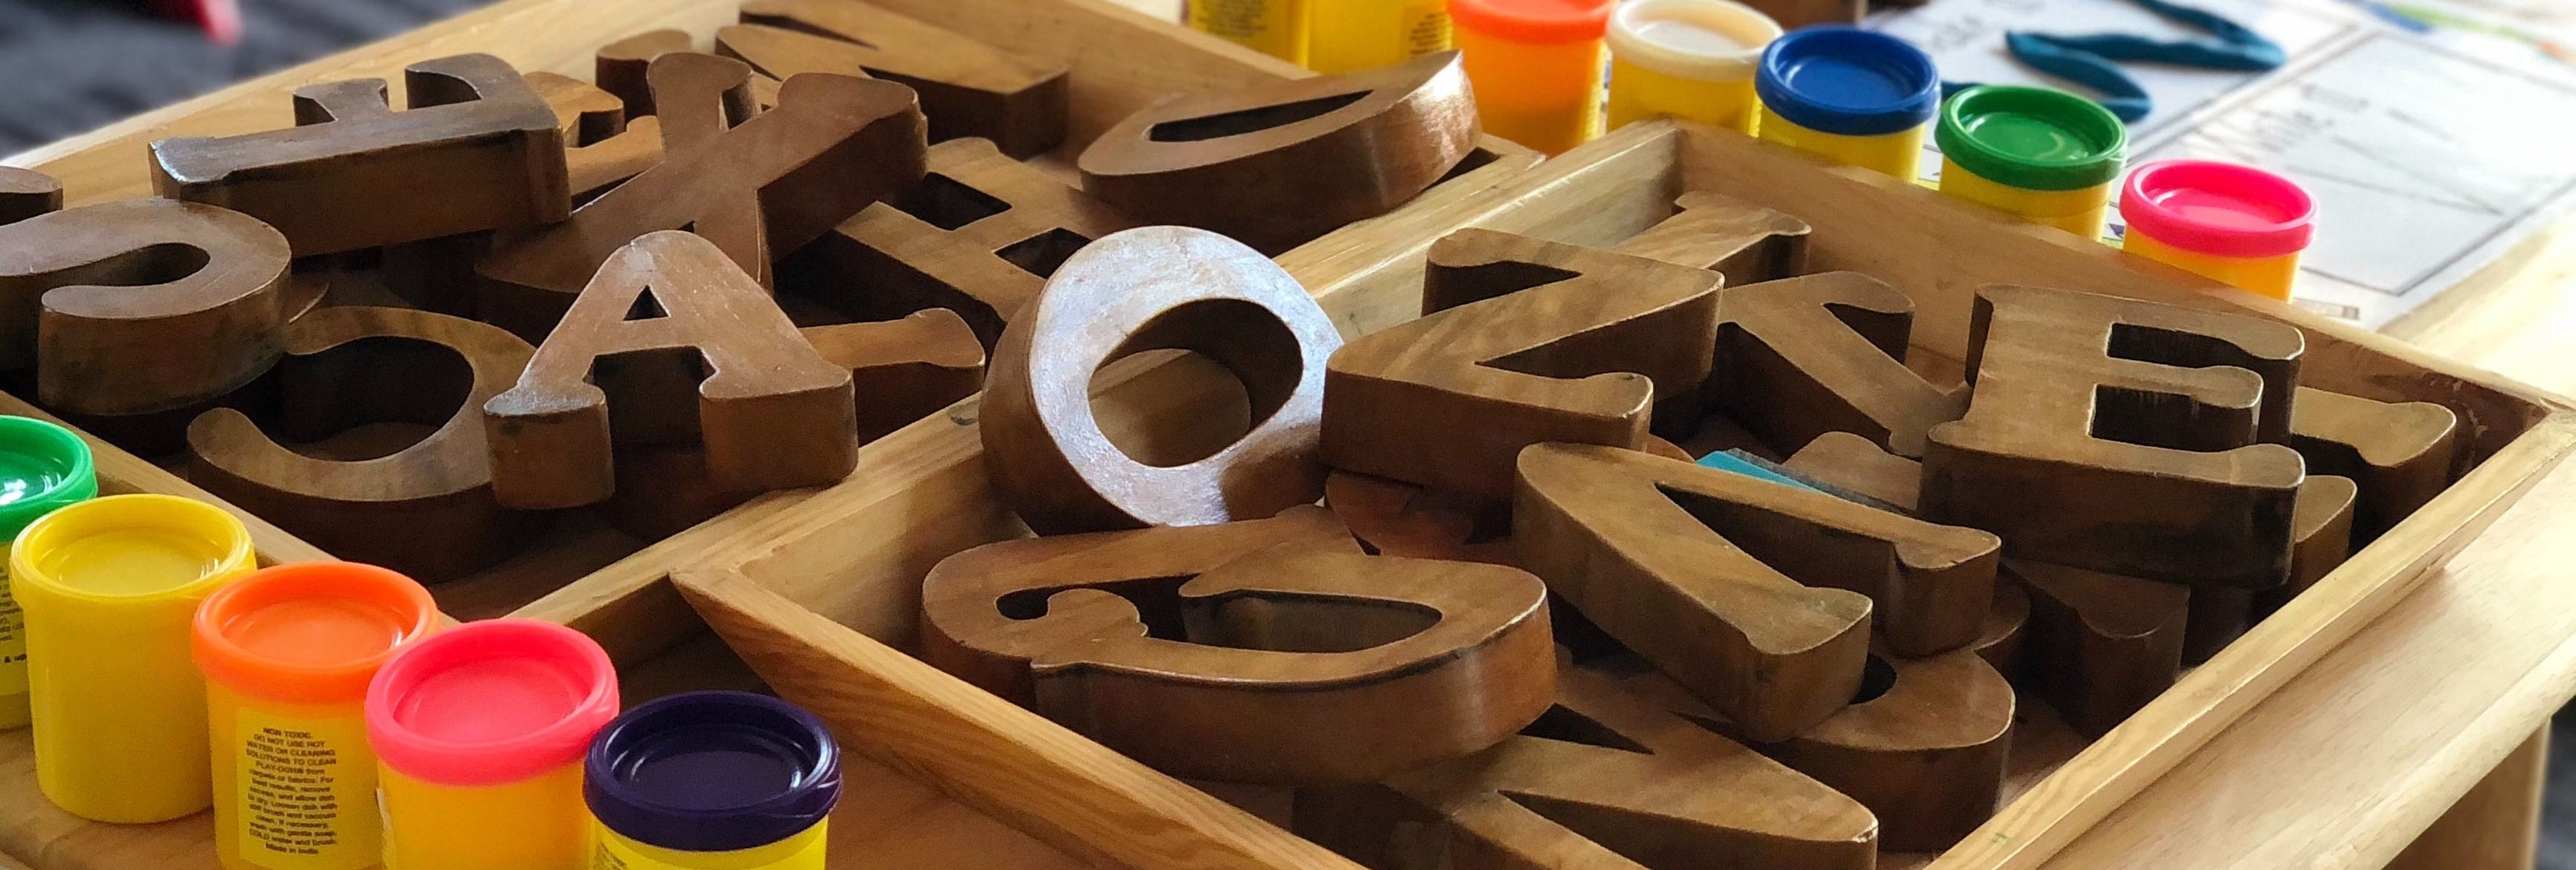 Verschiedene Spielzeuge wie Holzbuchstaben und Knete stehen auf dem Tisch einer Kita zur Auswahl